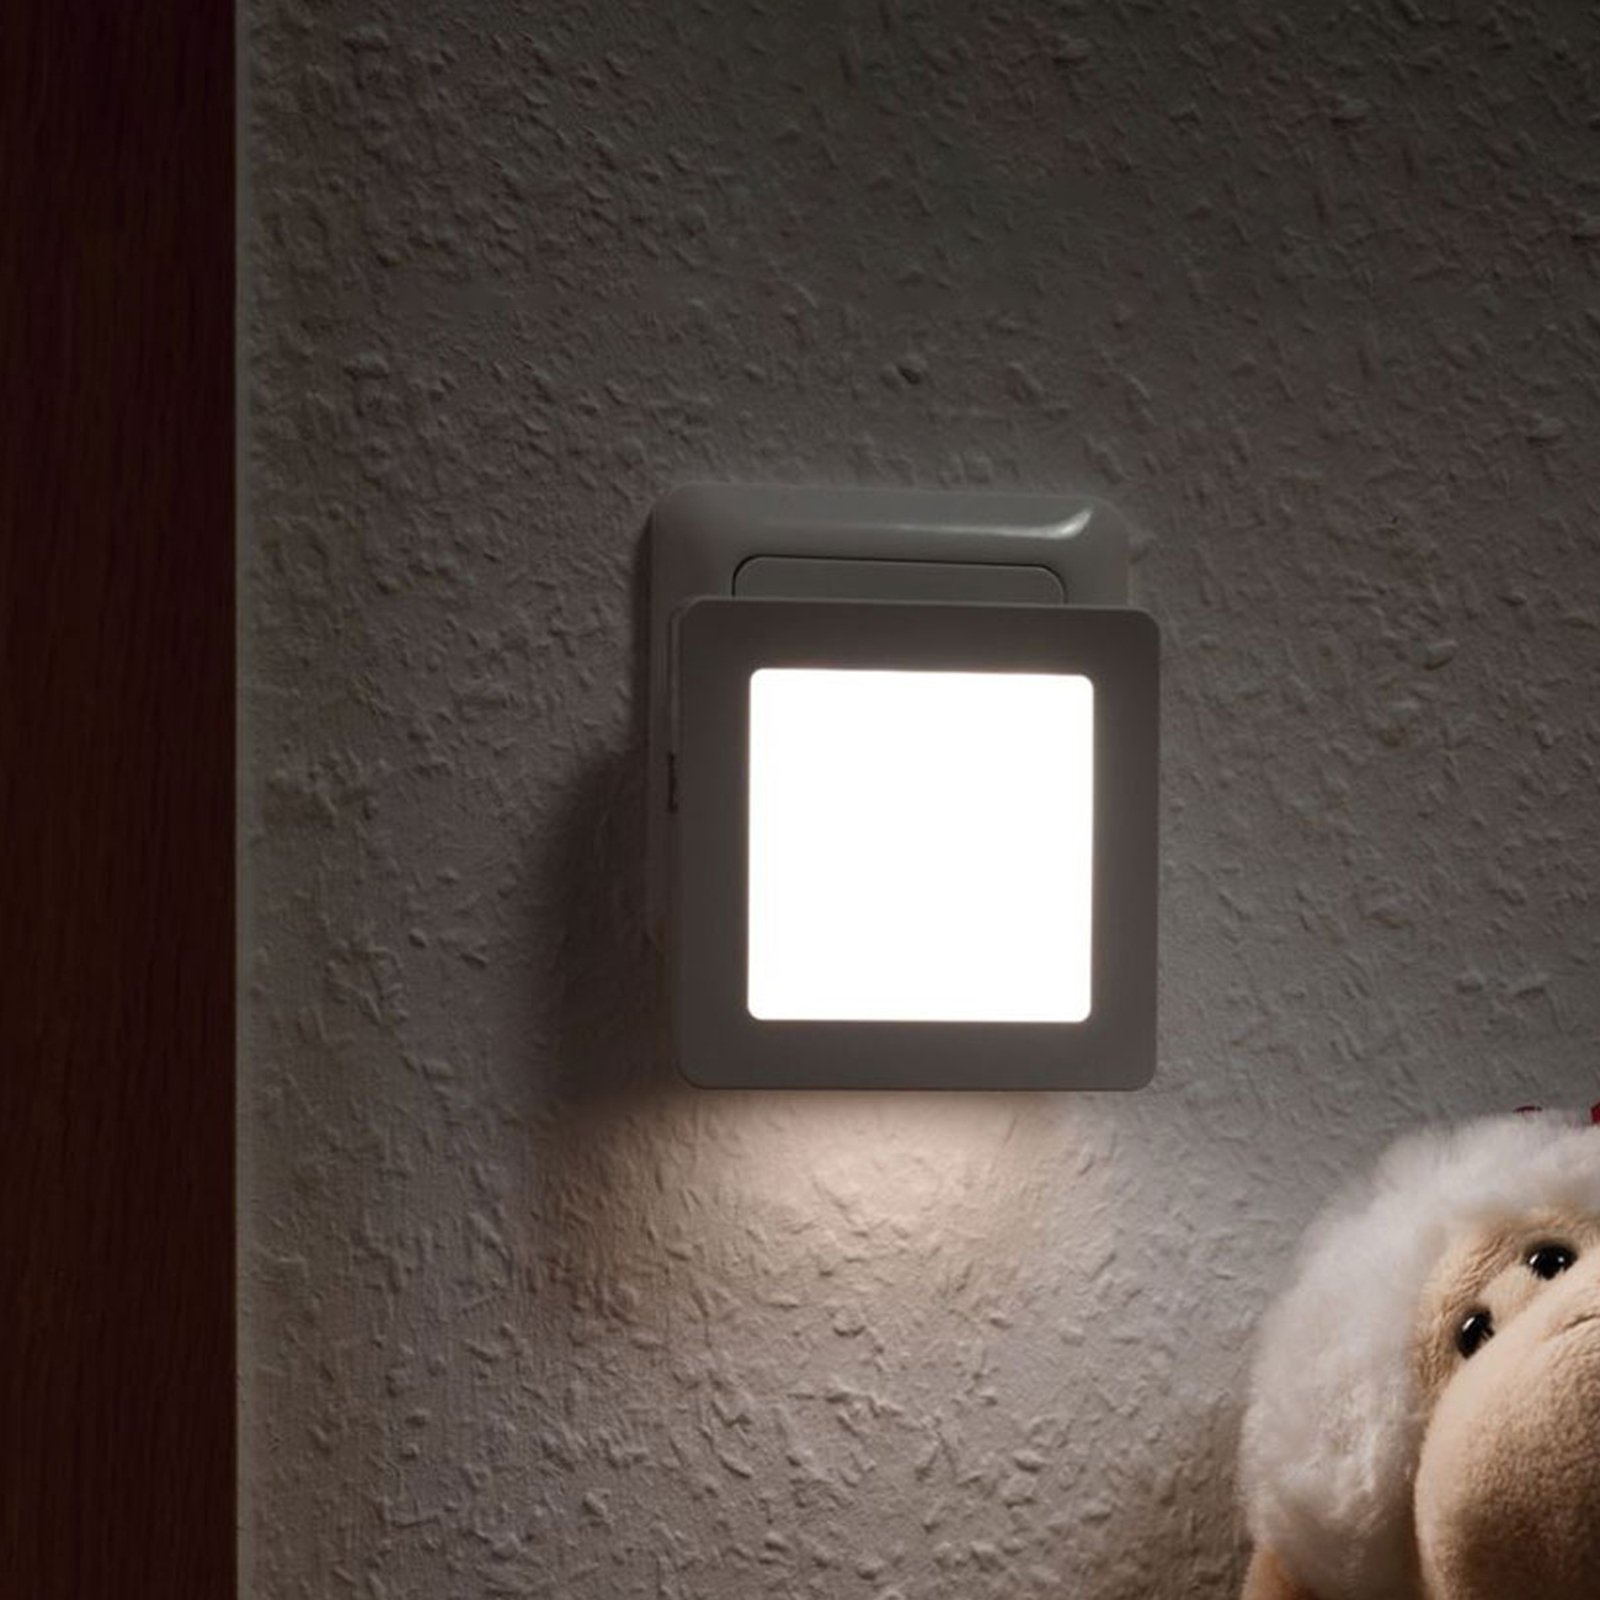 LED Lampe 2W warmweiss mit Dimmer als Leselampe oder Nachtlicht für Steckdosen 